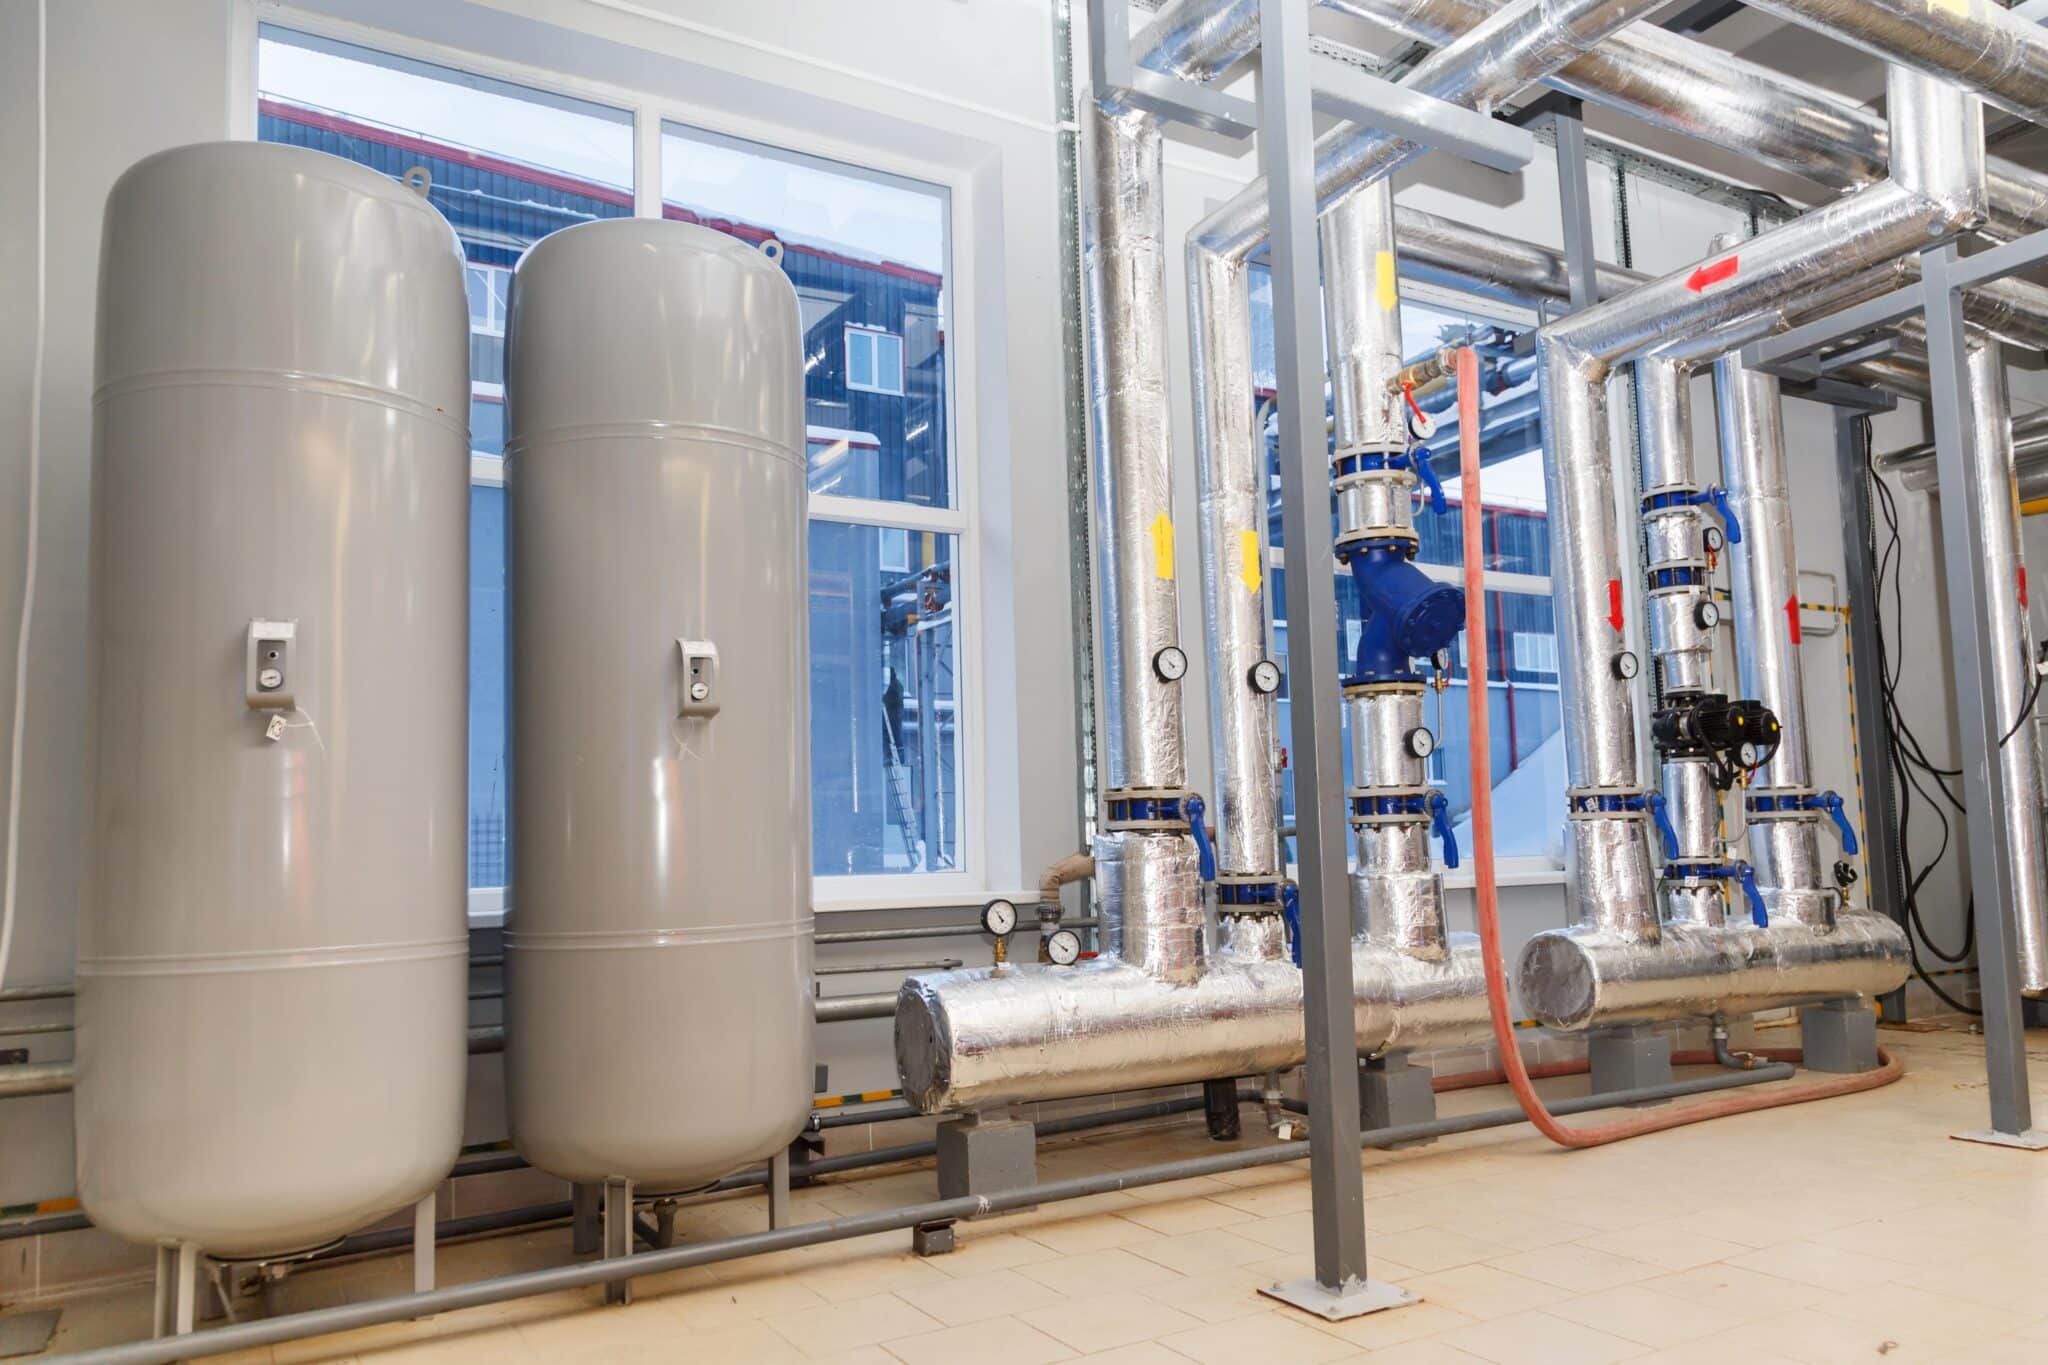 Installation d’un nouveau système de production d’eau chaude sanitaire (ECS)